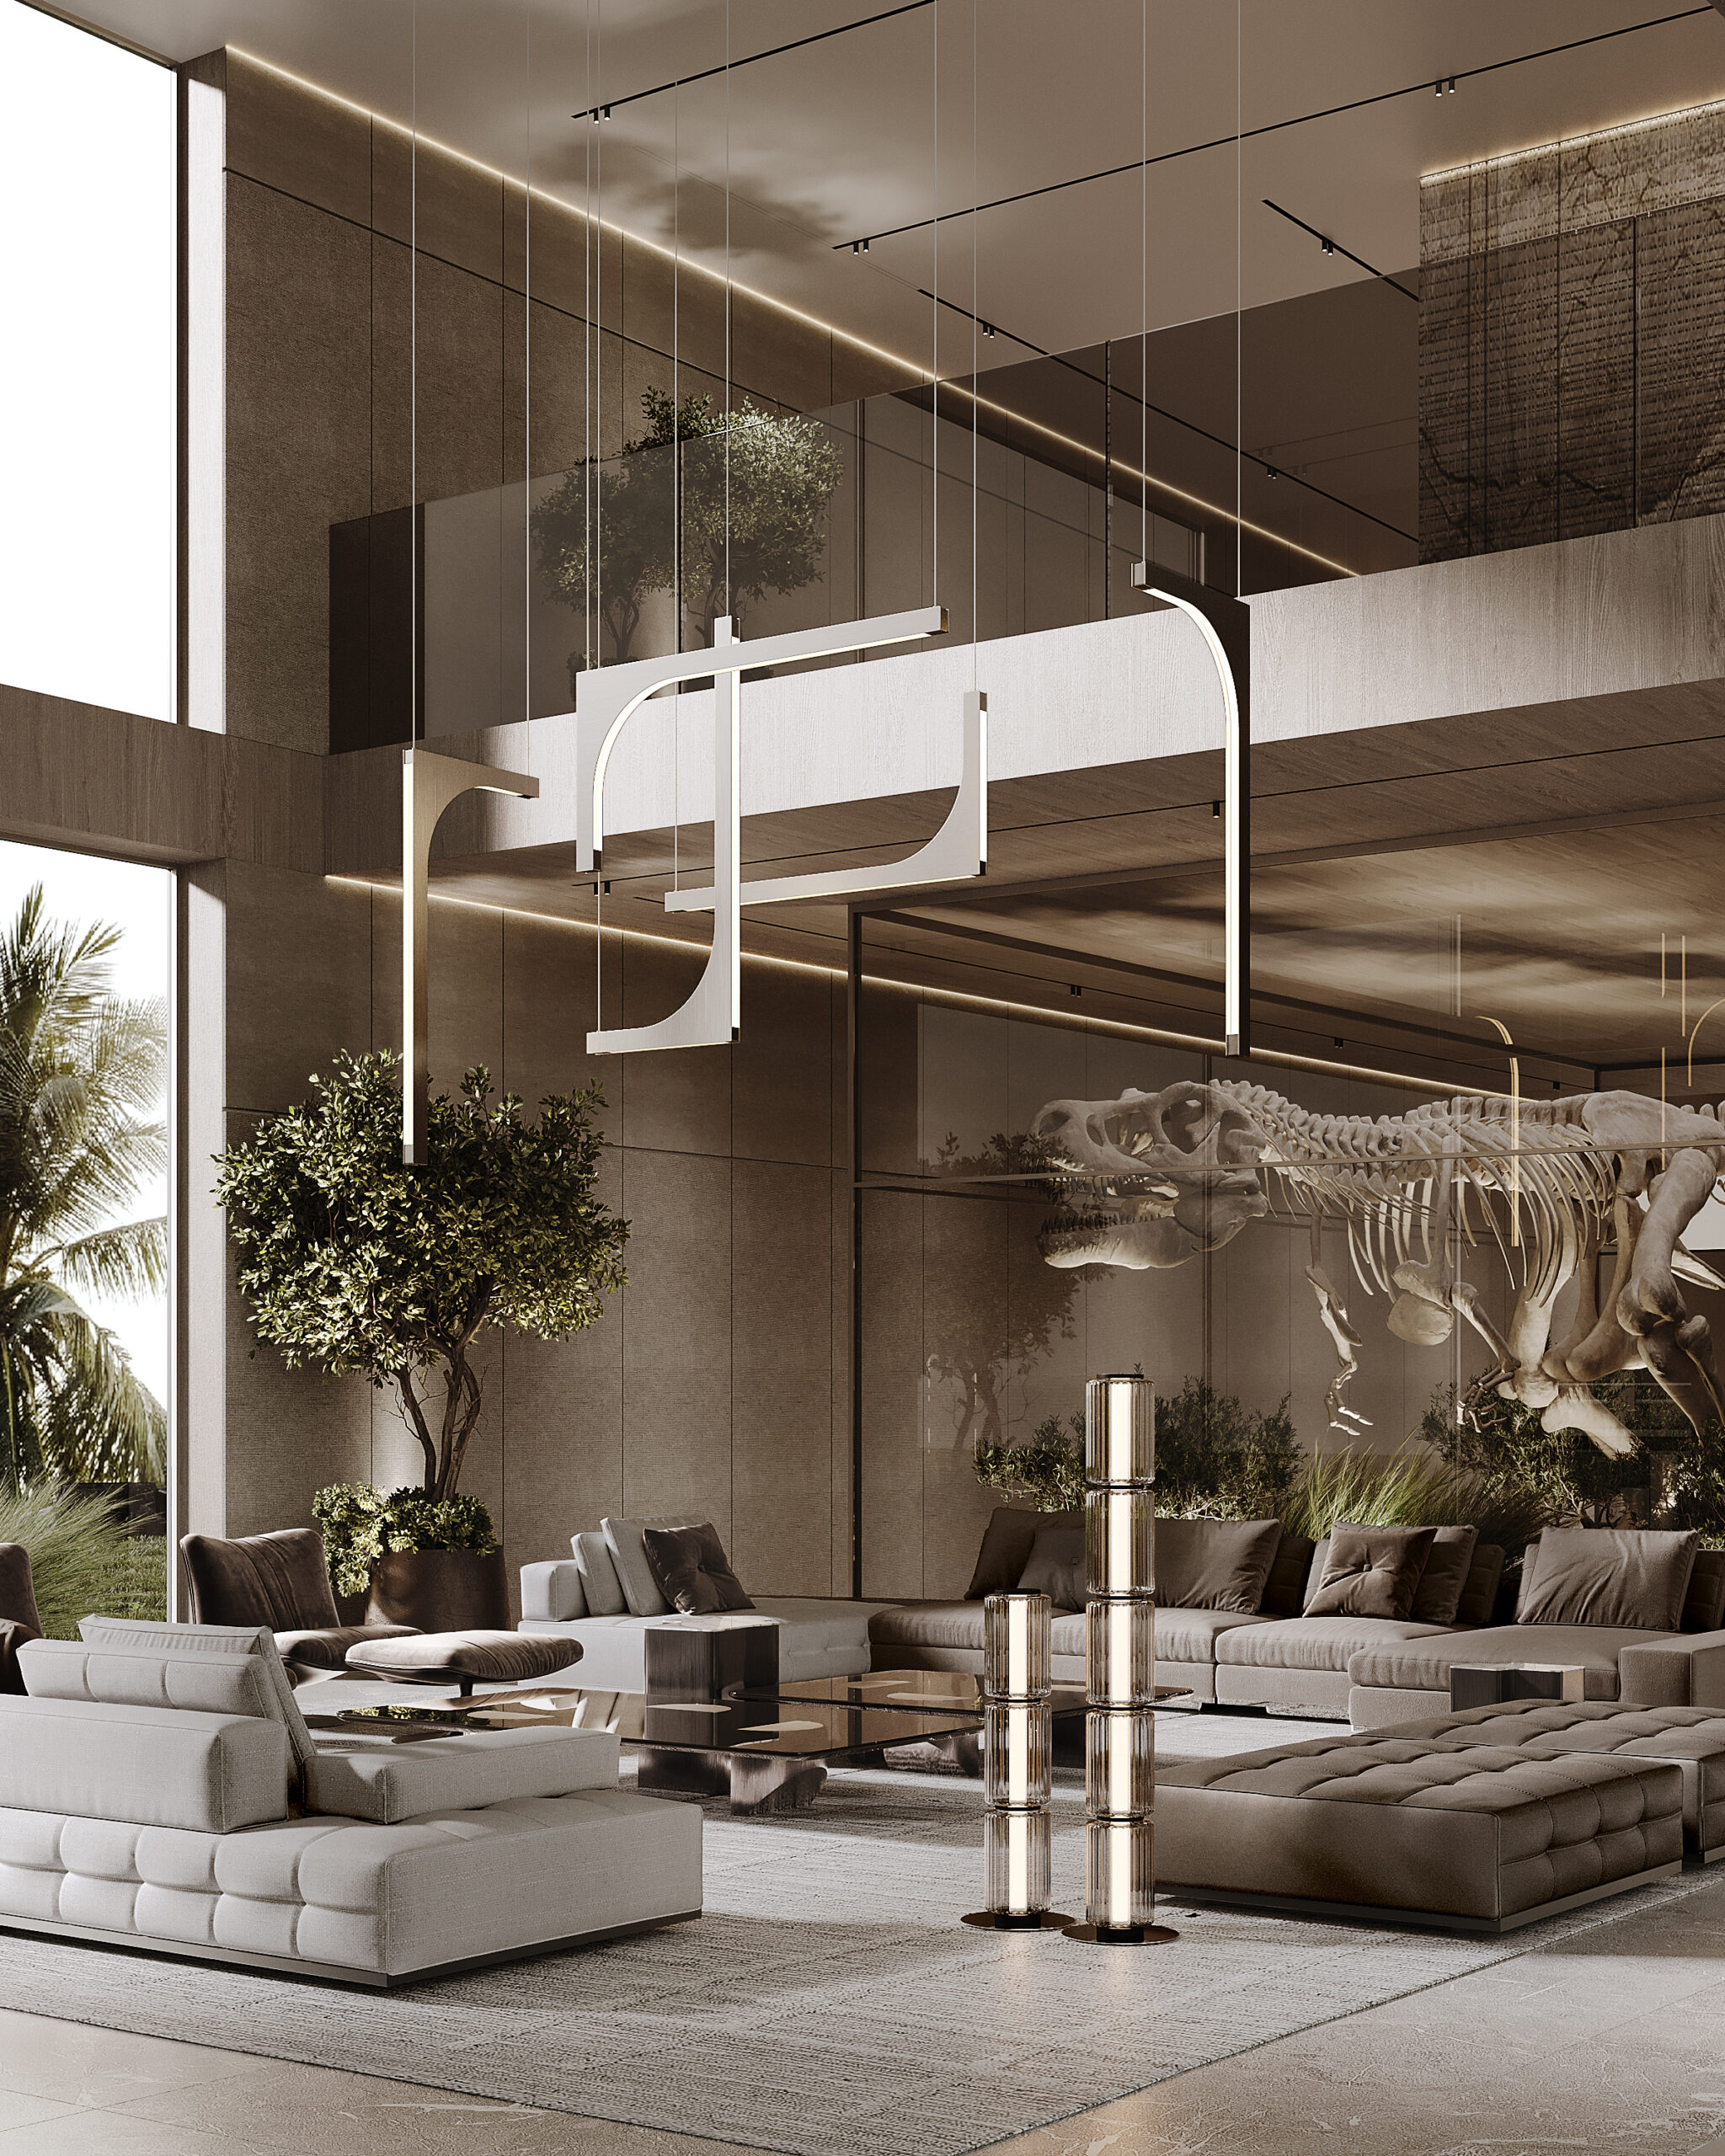 Solomia Home Villa Jumeirah Bay interior design